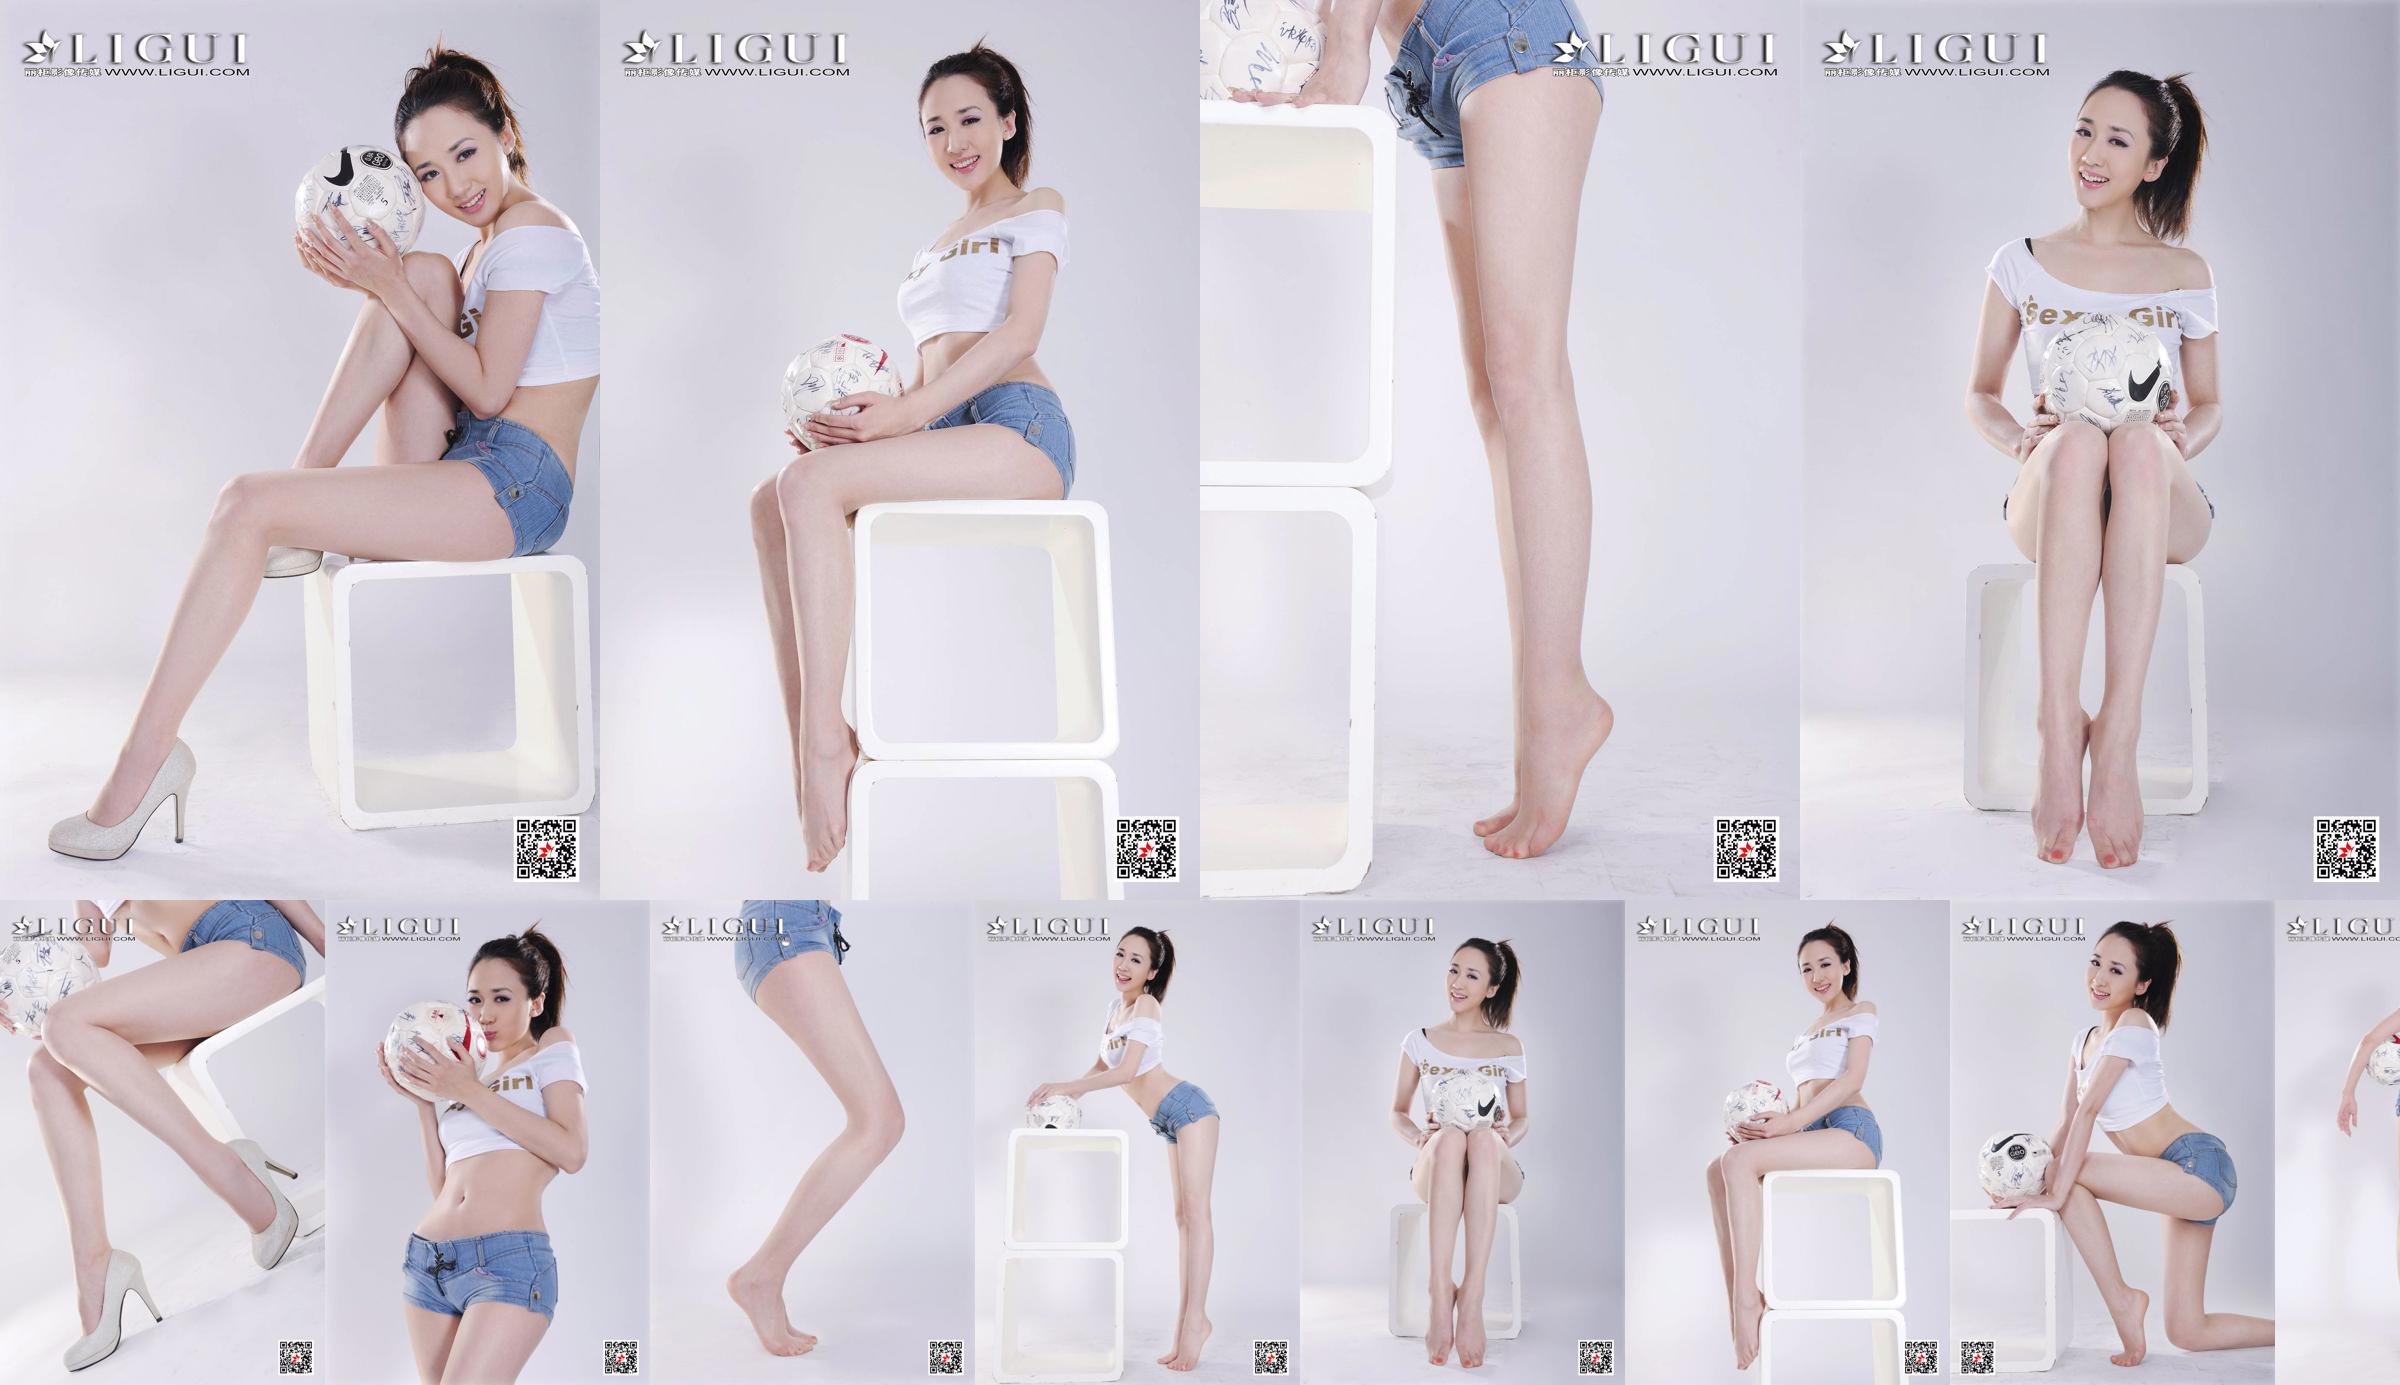 Người mẫu Qiu Chen "Cô gái bóng đá quần siêu ngắn" [LIGUI] No.e5dbb0 Trang 1